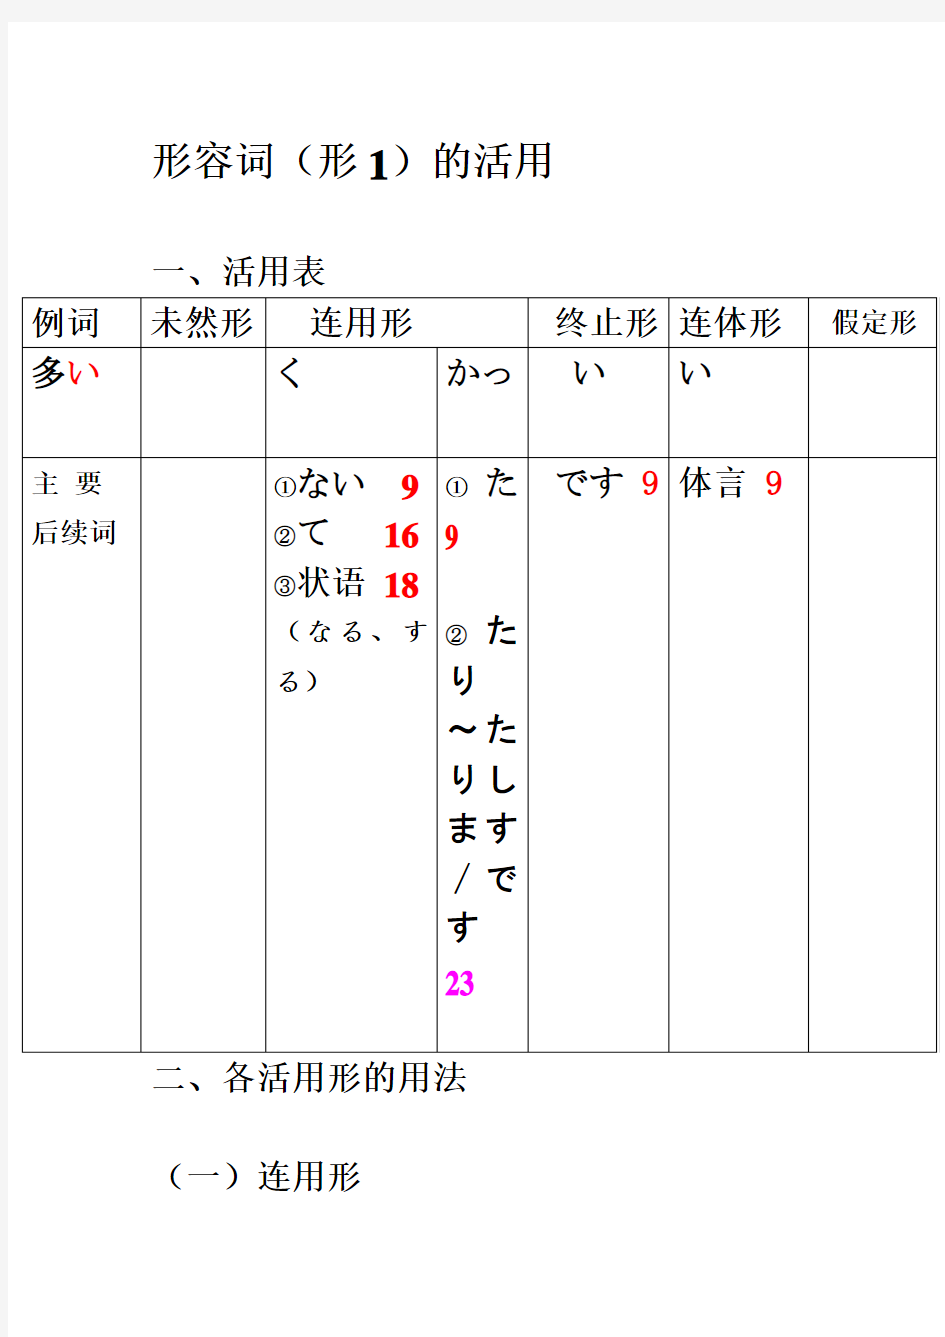 日语基础语法总结